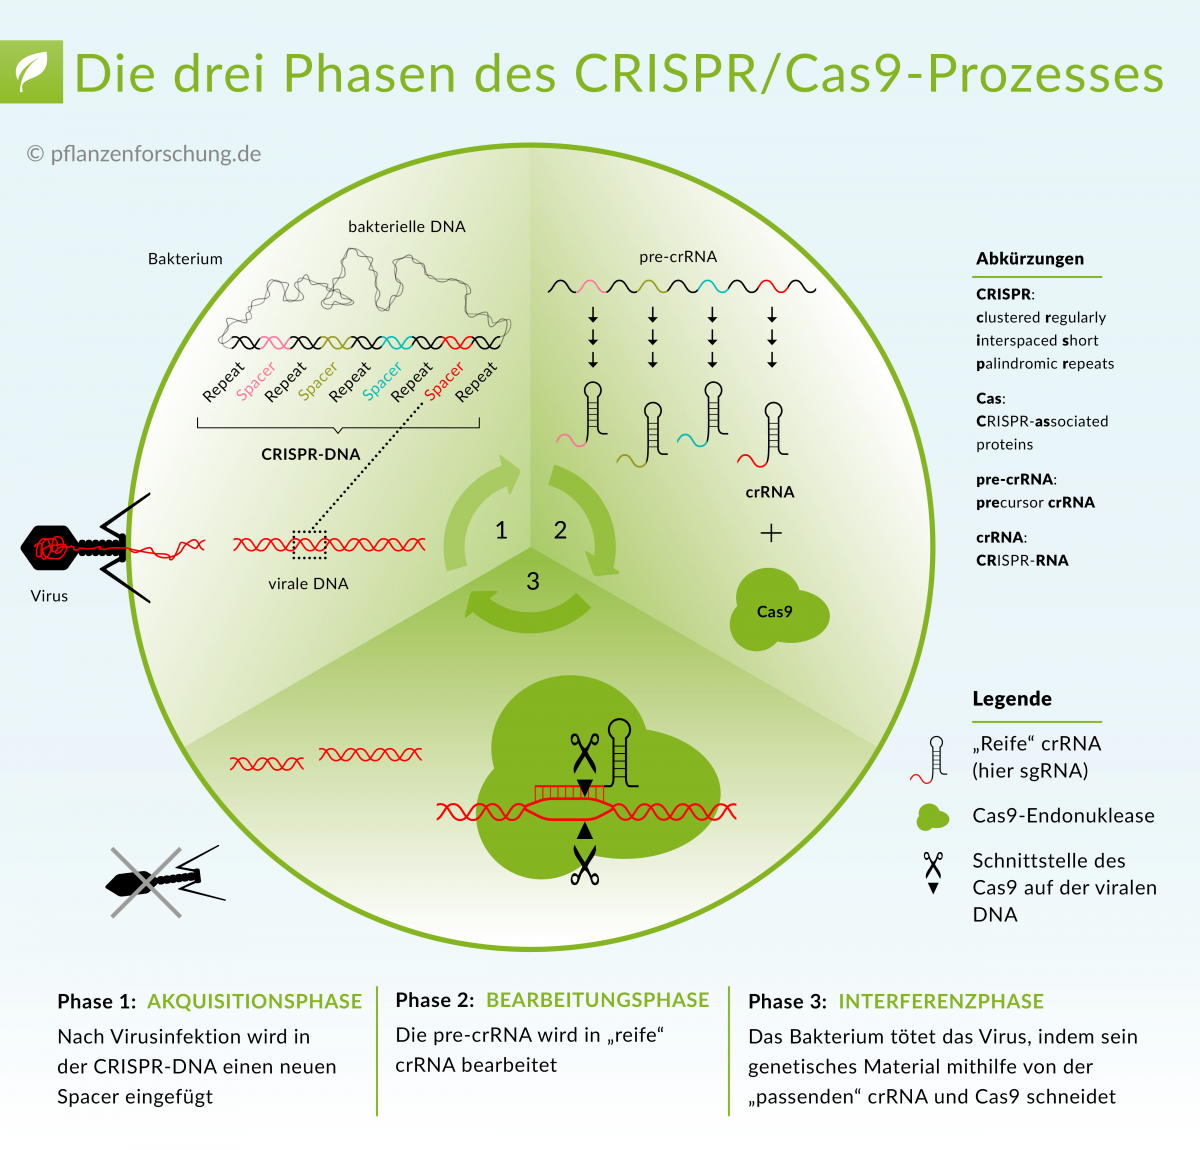 Was ist CRISPR/Cas9? Lesen Sie mehr darüber, wie diese neue Technologie auf molekularer Ebene funktioniert: "Wie CRISPR/Cas funktioniert - Eine einfache Technologie verbessert die Effizienz der Genom Editierung".
